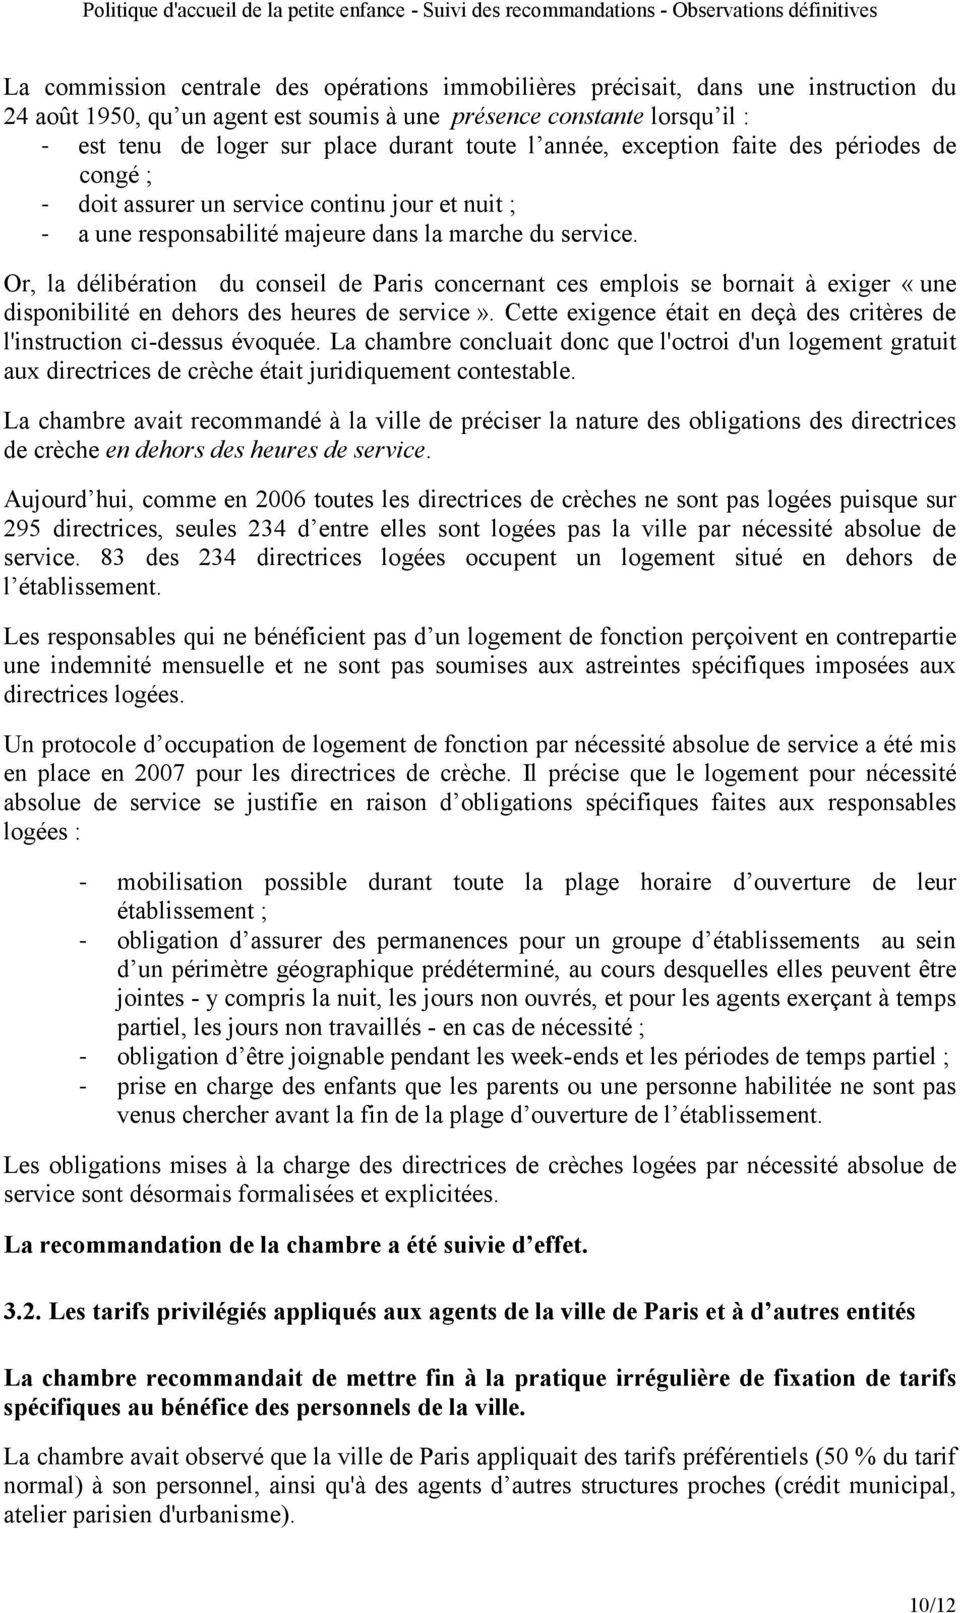 Or, la délibération du conseil de Paris concernant ces emplois se bornait à exiger «une disponibilité en dehors des heures de service».